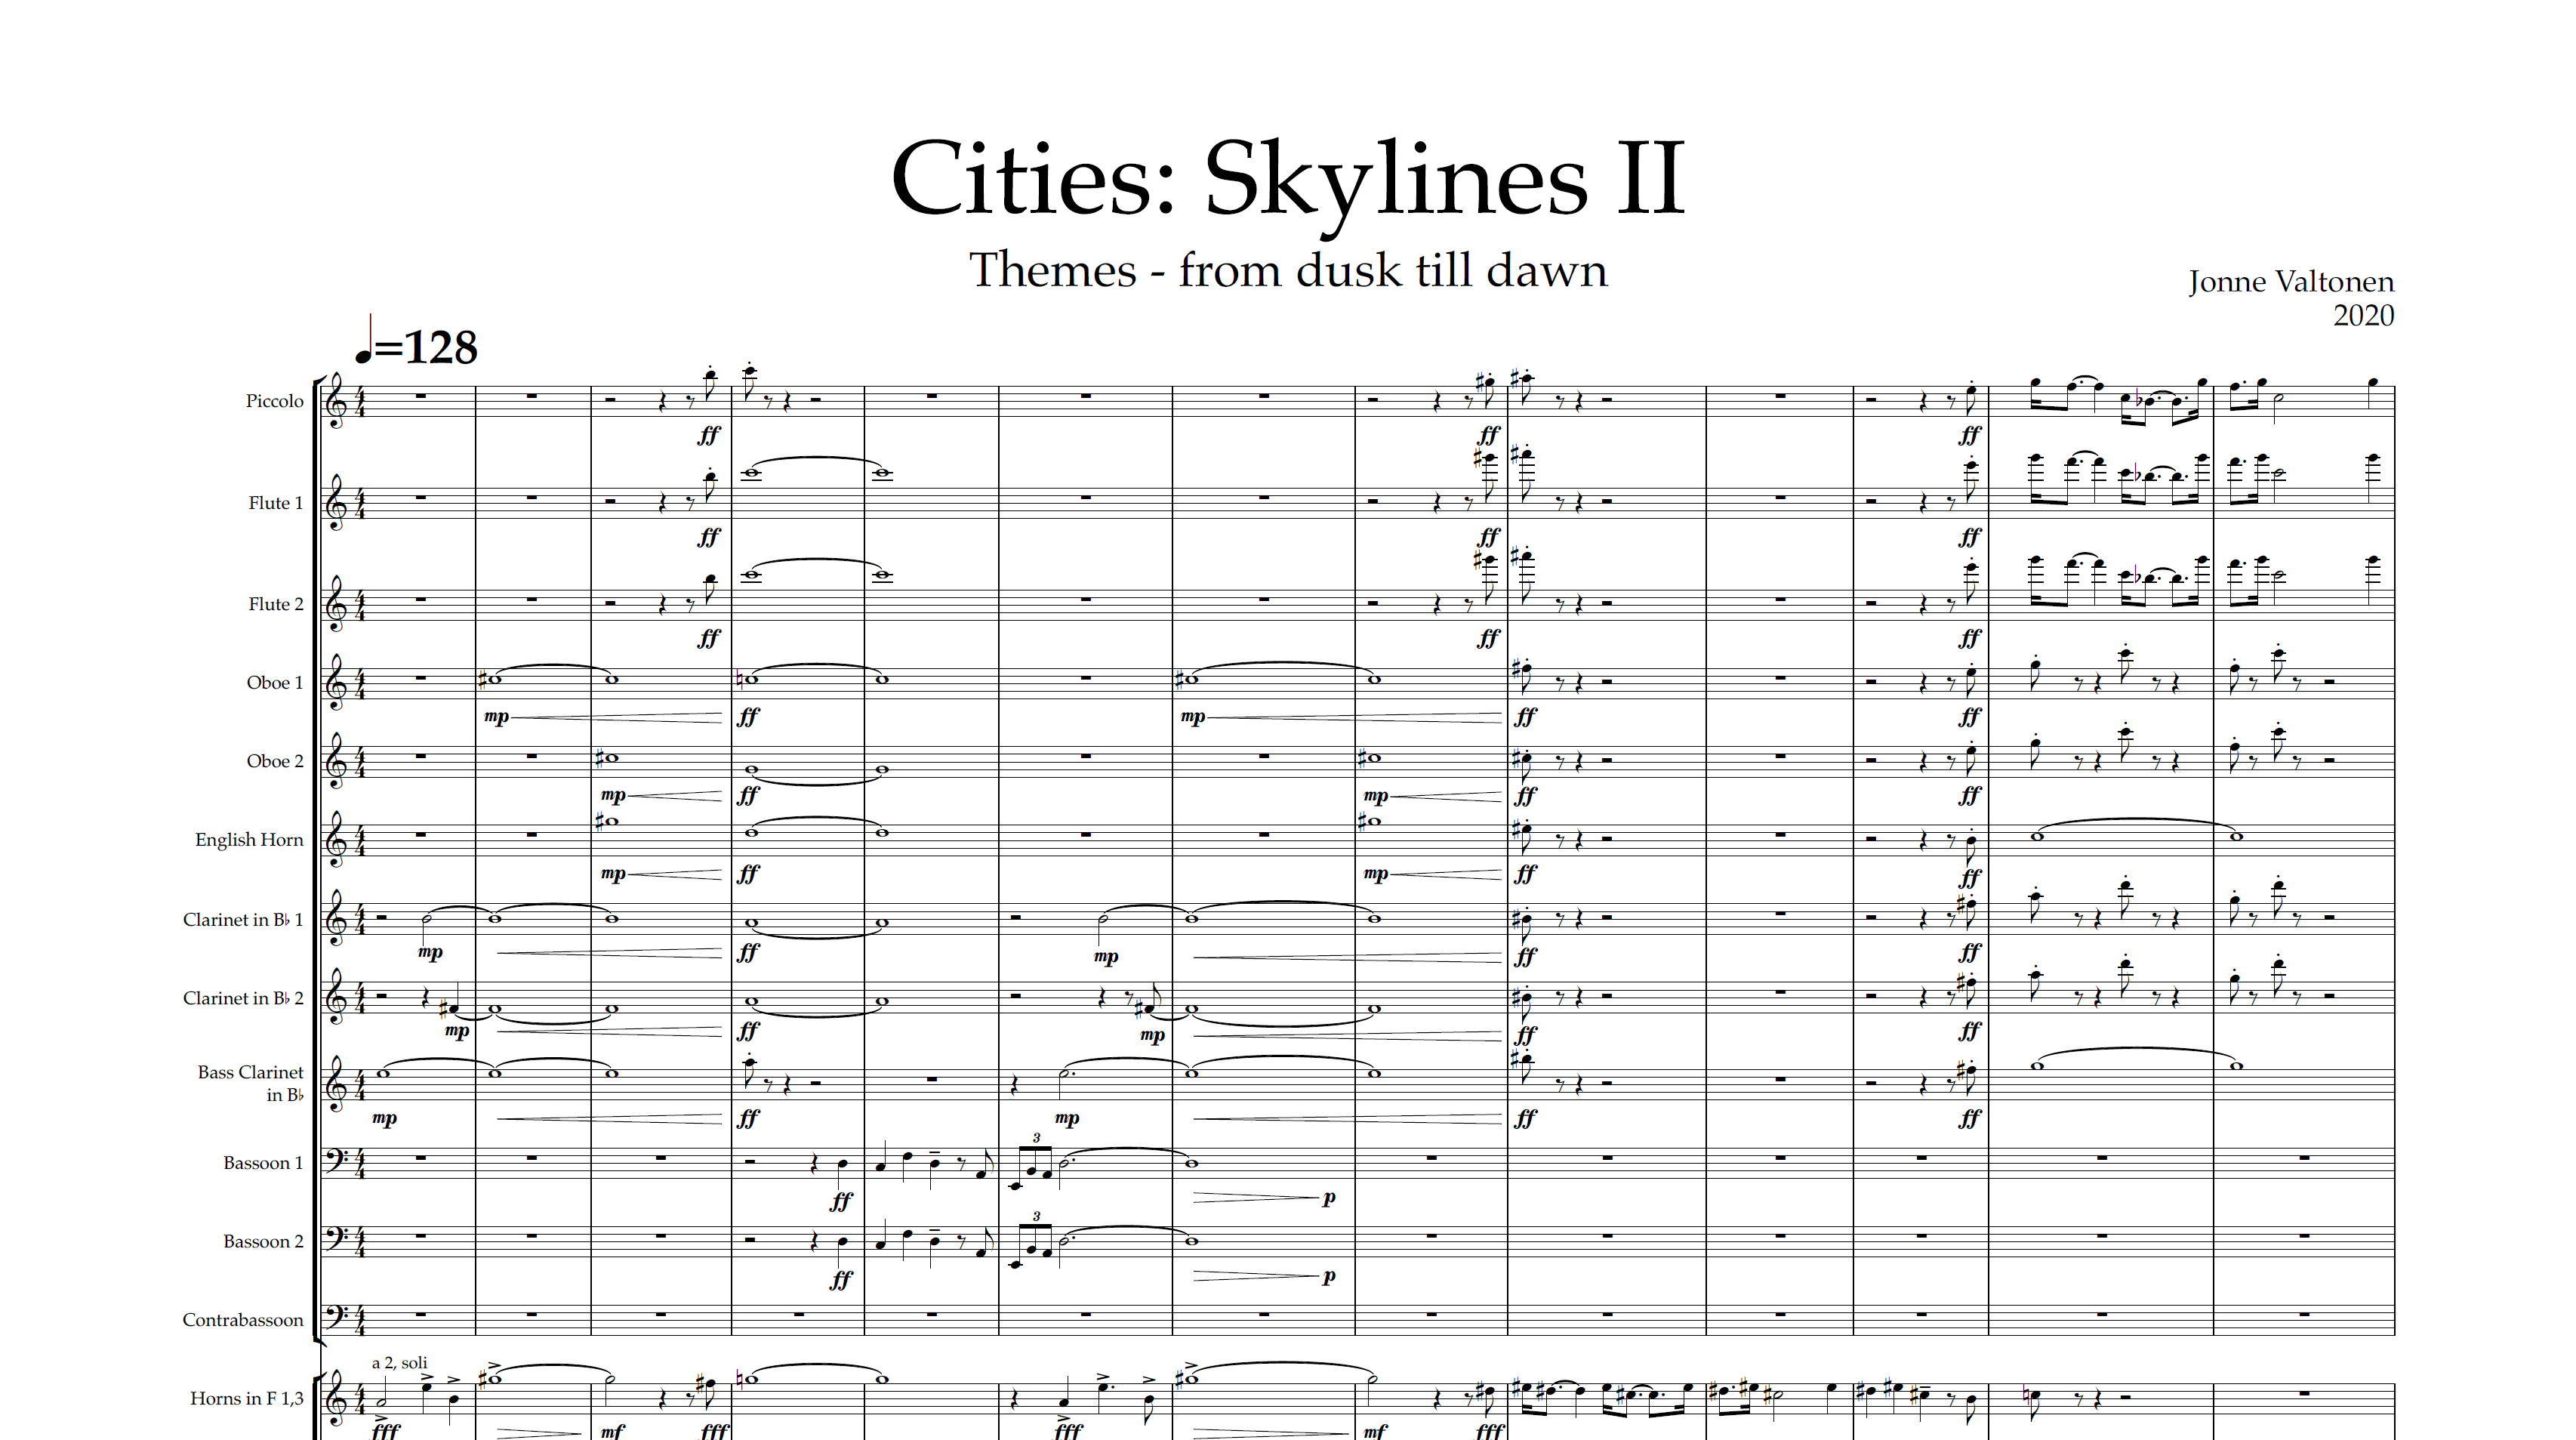 cities-skylines-ii-feature-12-8